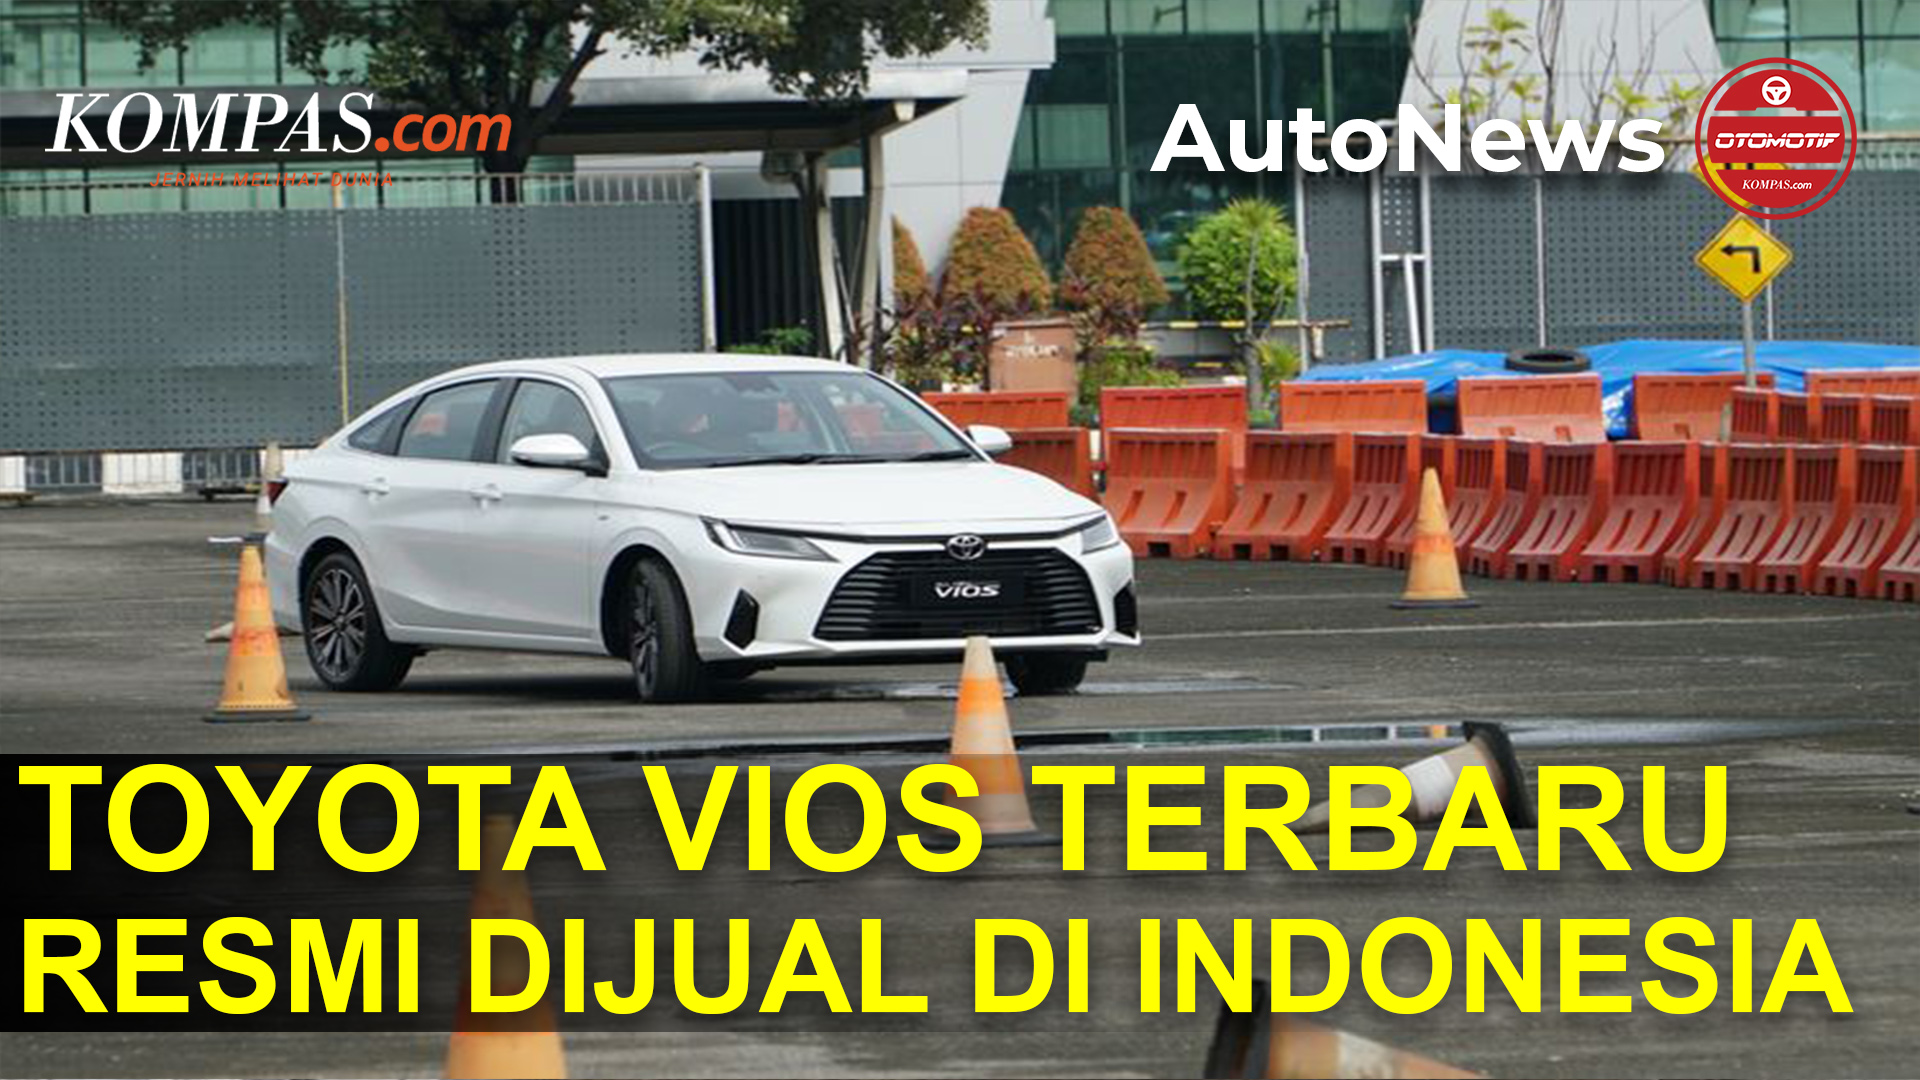 Toyota Vios Terbaru Resmi Dijual di Indonesia, Harga Mulai Rp 314 Jutaan